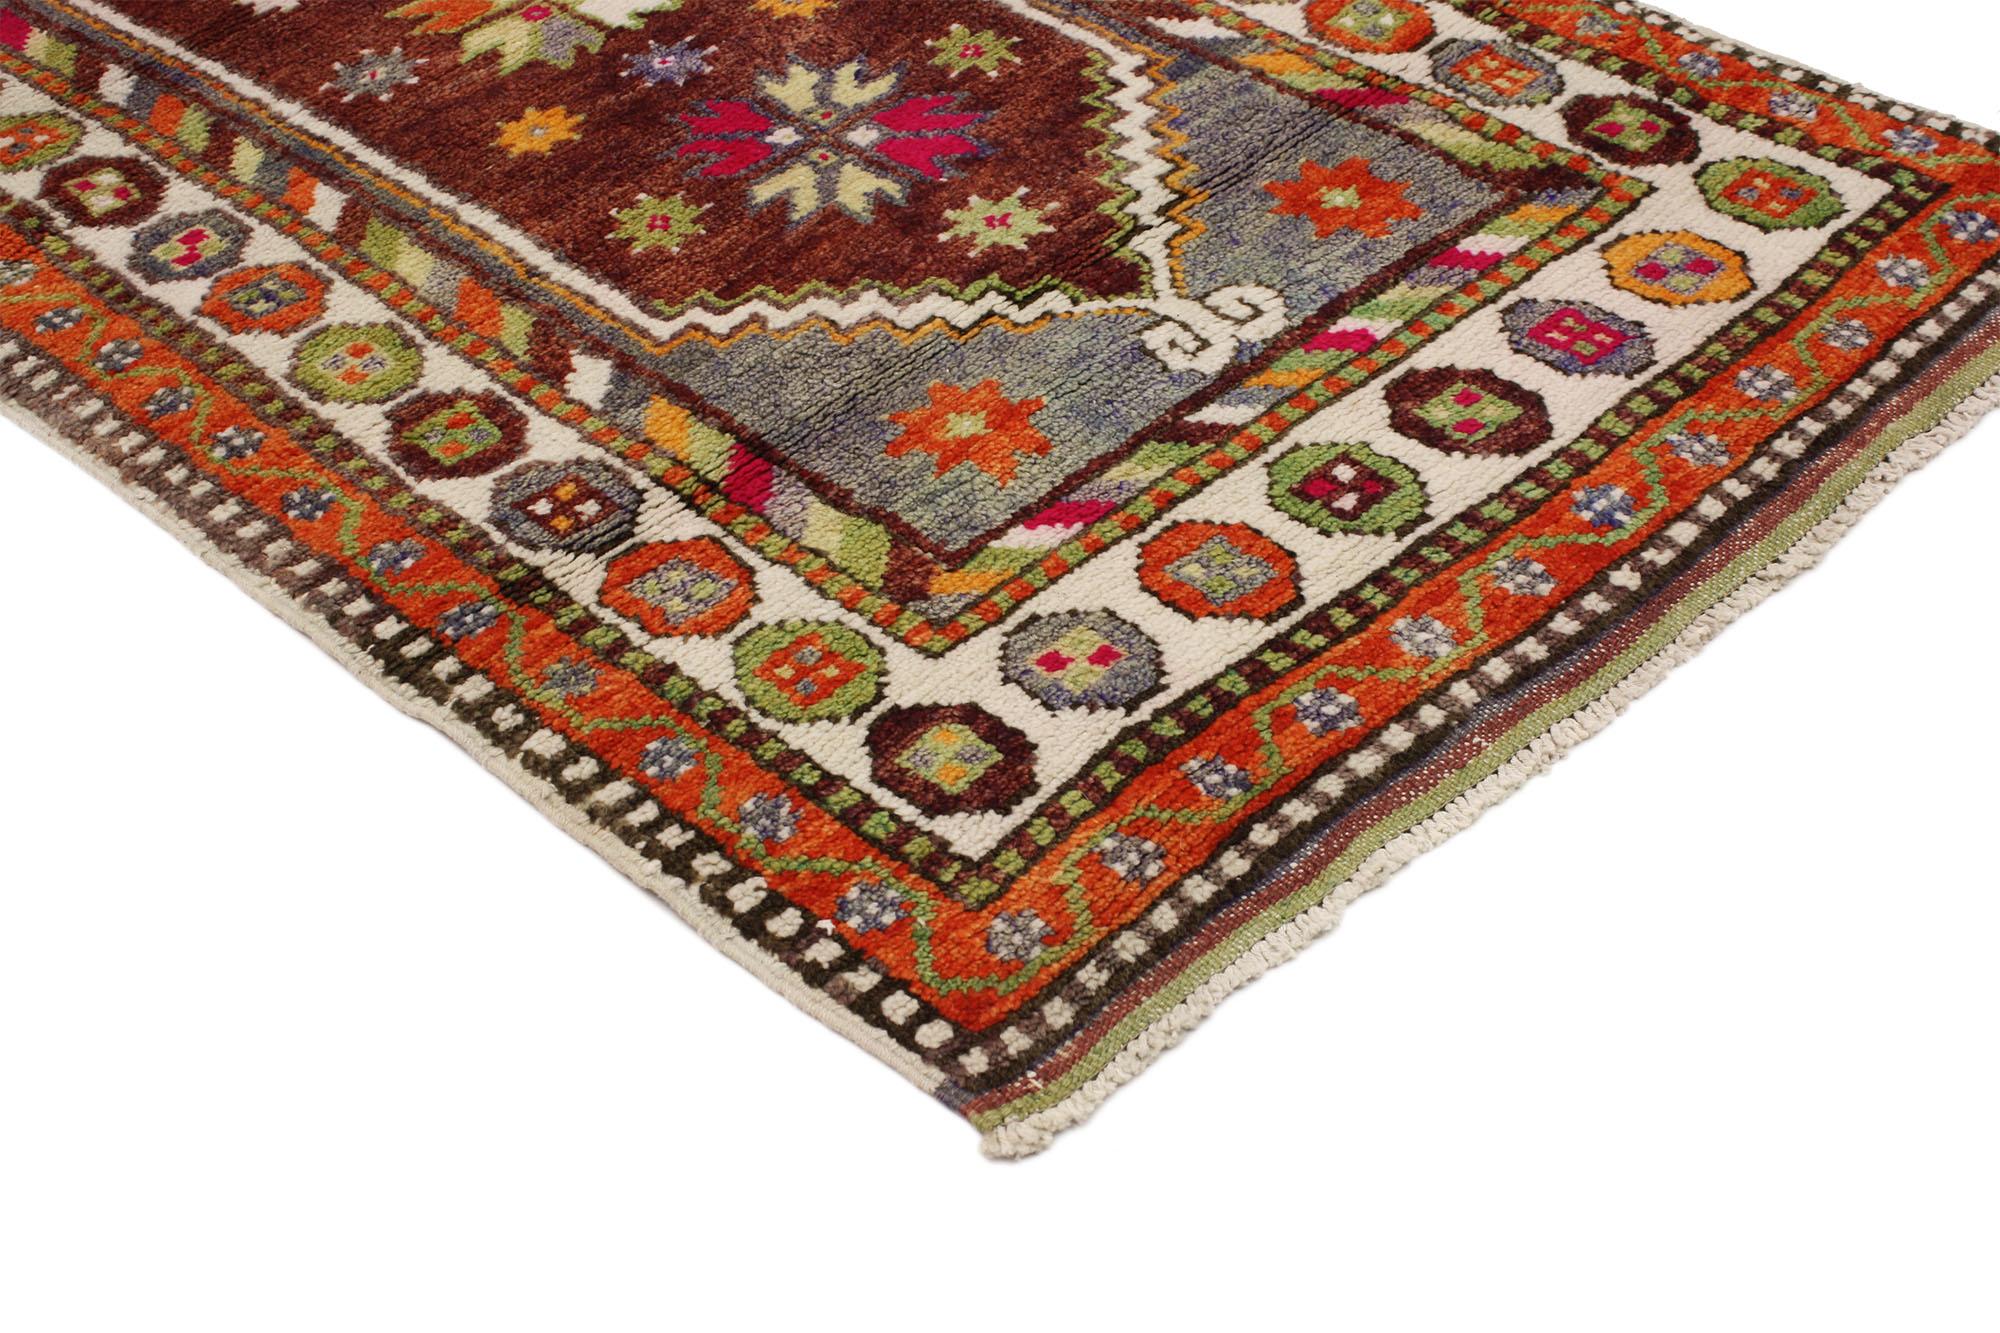 51768 Vintage Turkish Oushak Rug, 02'06 x 04'06.
Dieser farbenfrohe Oushak-Teppich ist eine Mischung aus farbenfrohem Design und skurrilem Boho-Stil. Das auffällige Tribal-Muster und die lebendigen Farben, die in dieses Stück eingewebt sind, sorgen